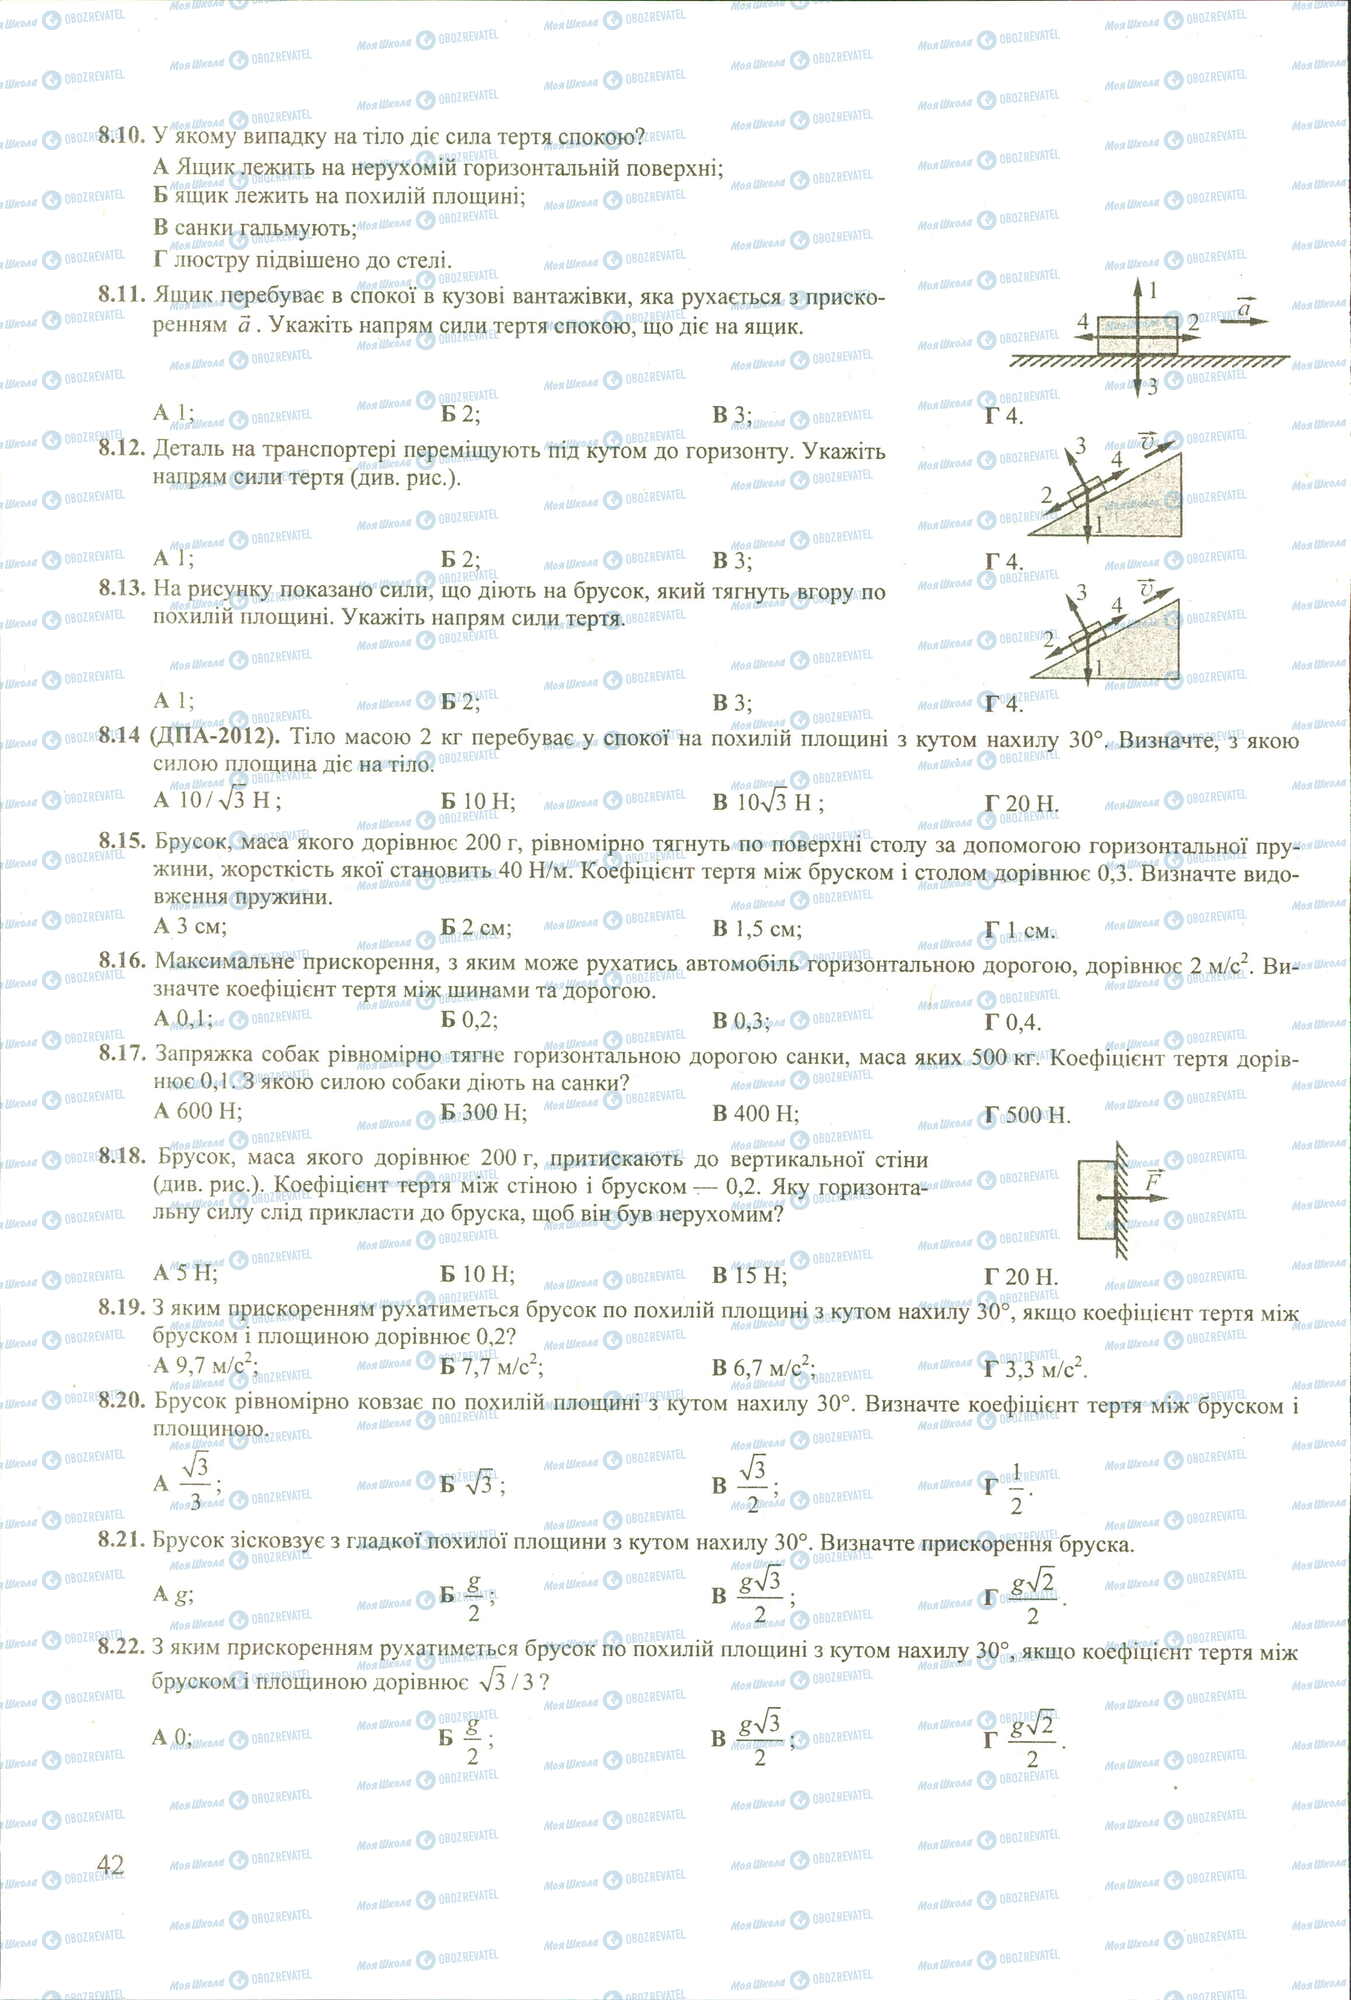 ЗНО Физика 11 класс страница 10-22